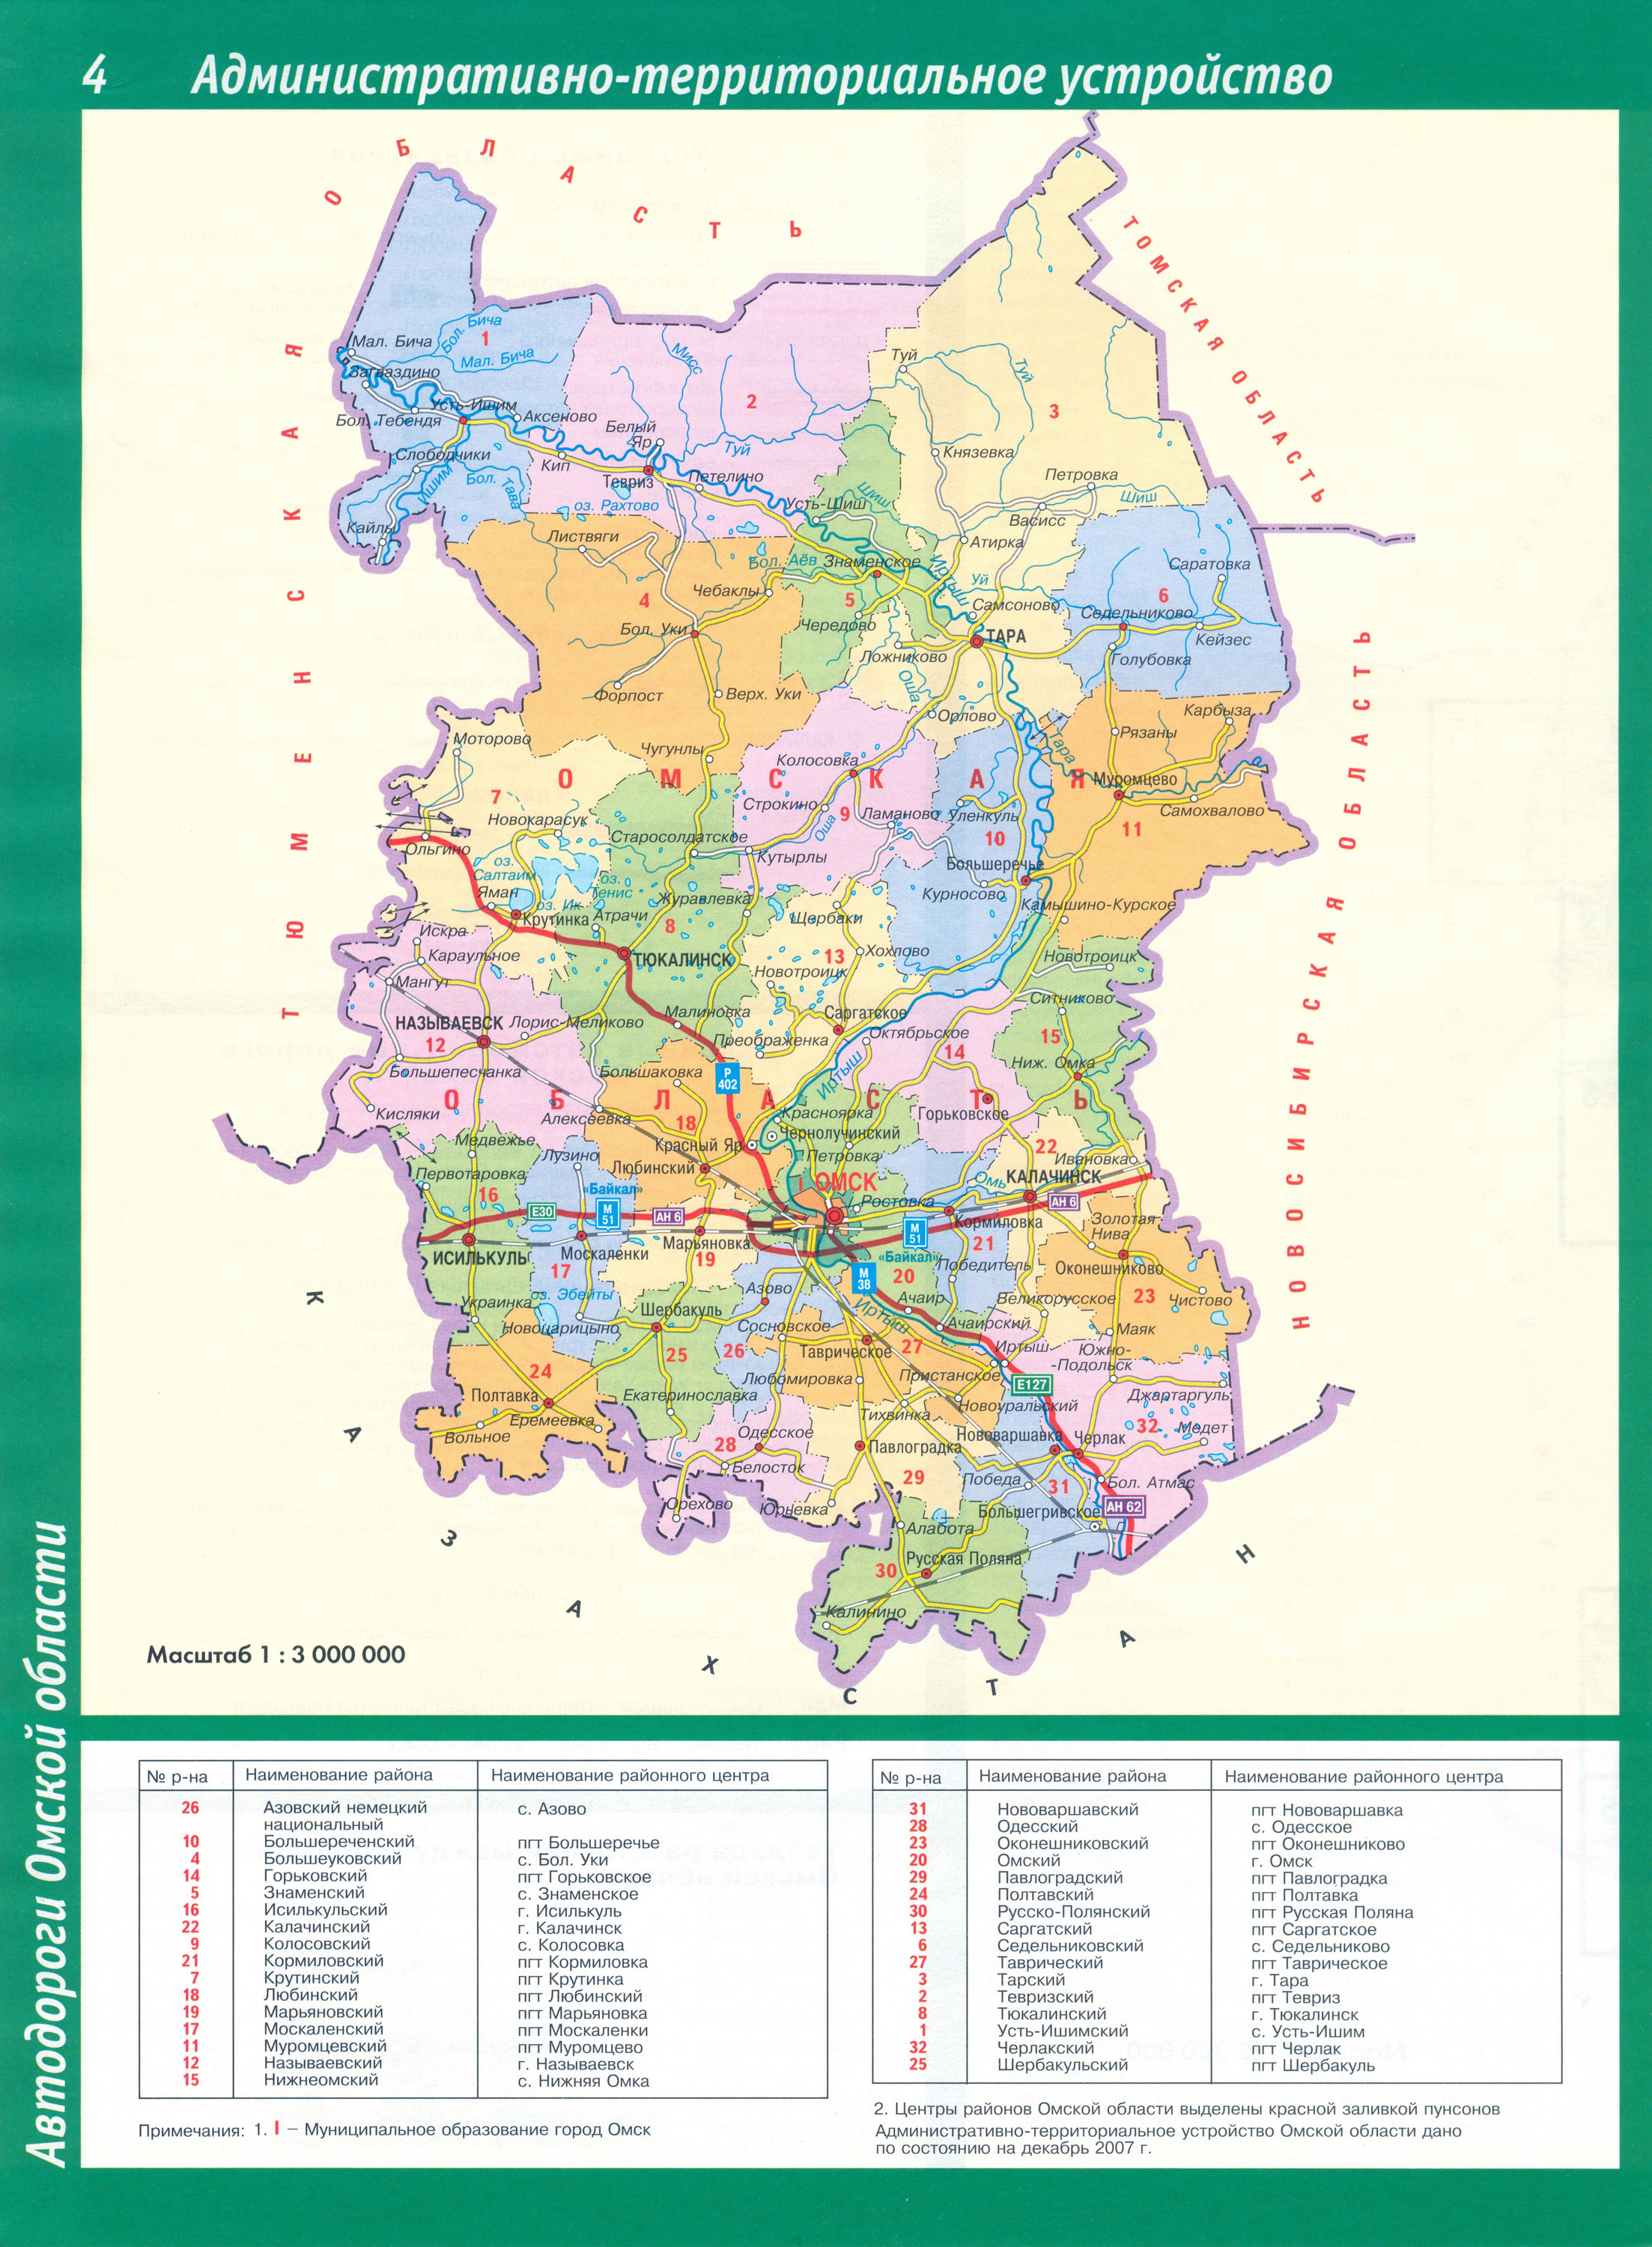 Сибирь - подробные карты областей Сибирского федерального округа, B0 - Омская область по районам, областной центр г Омск